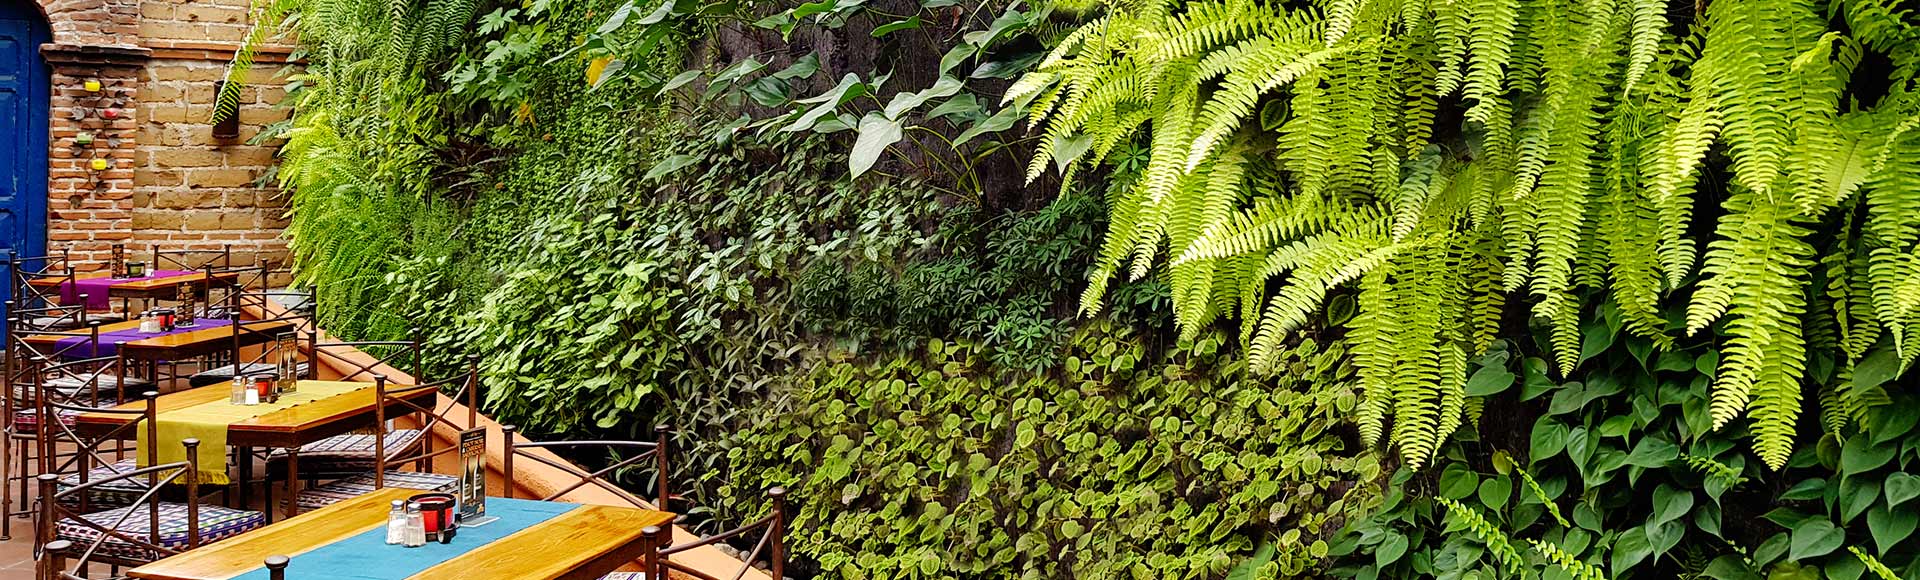 portada jardines verticales guatemala restaurante hacienda real